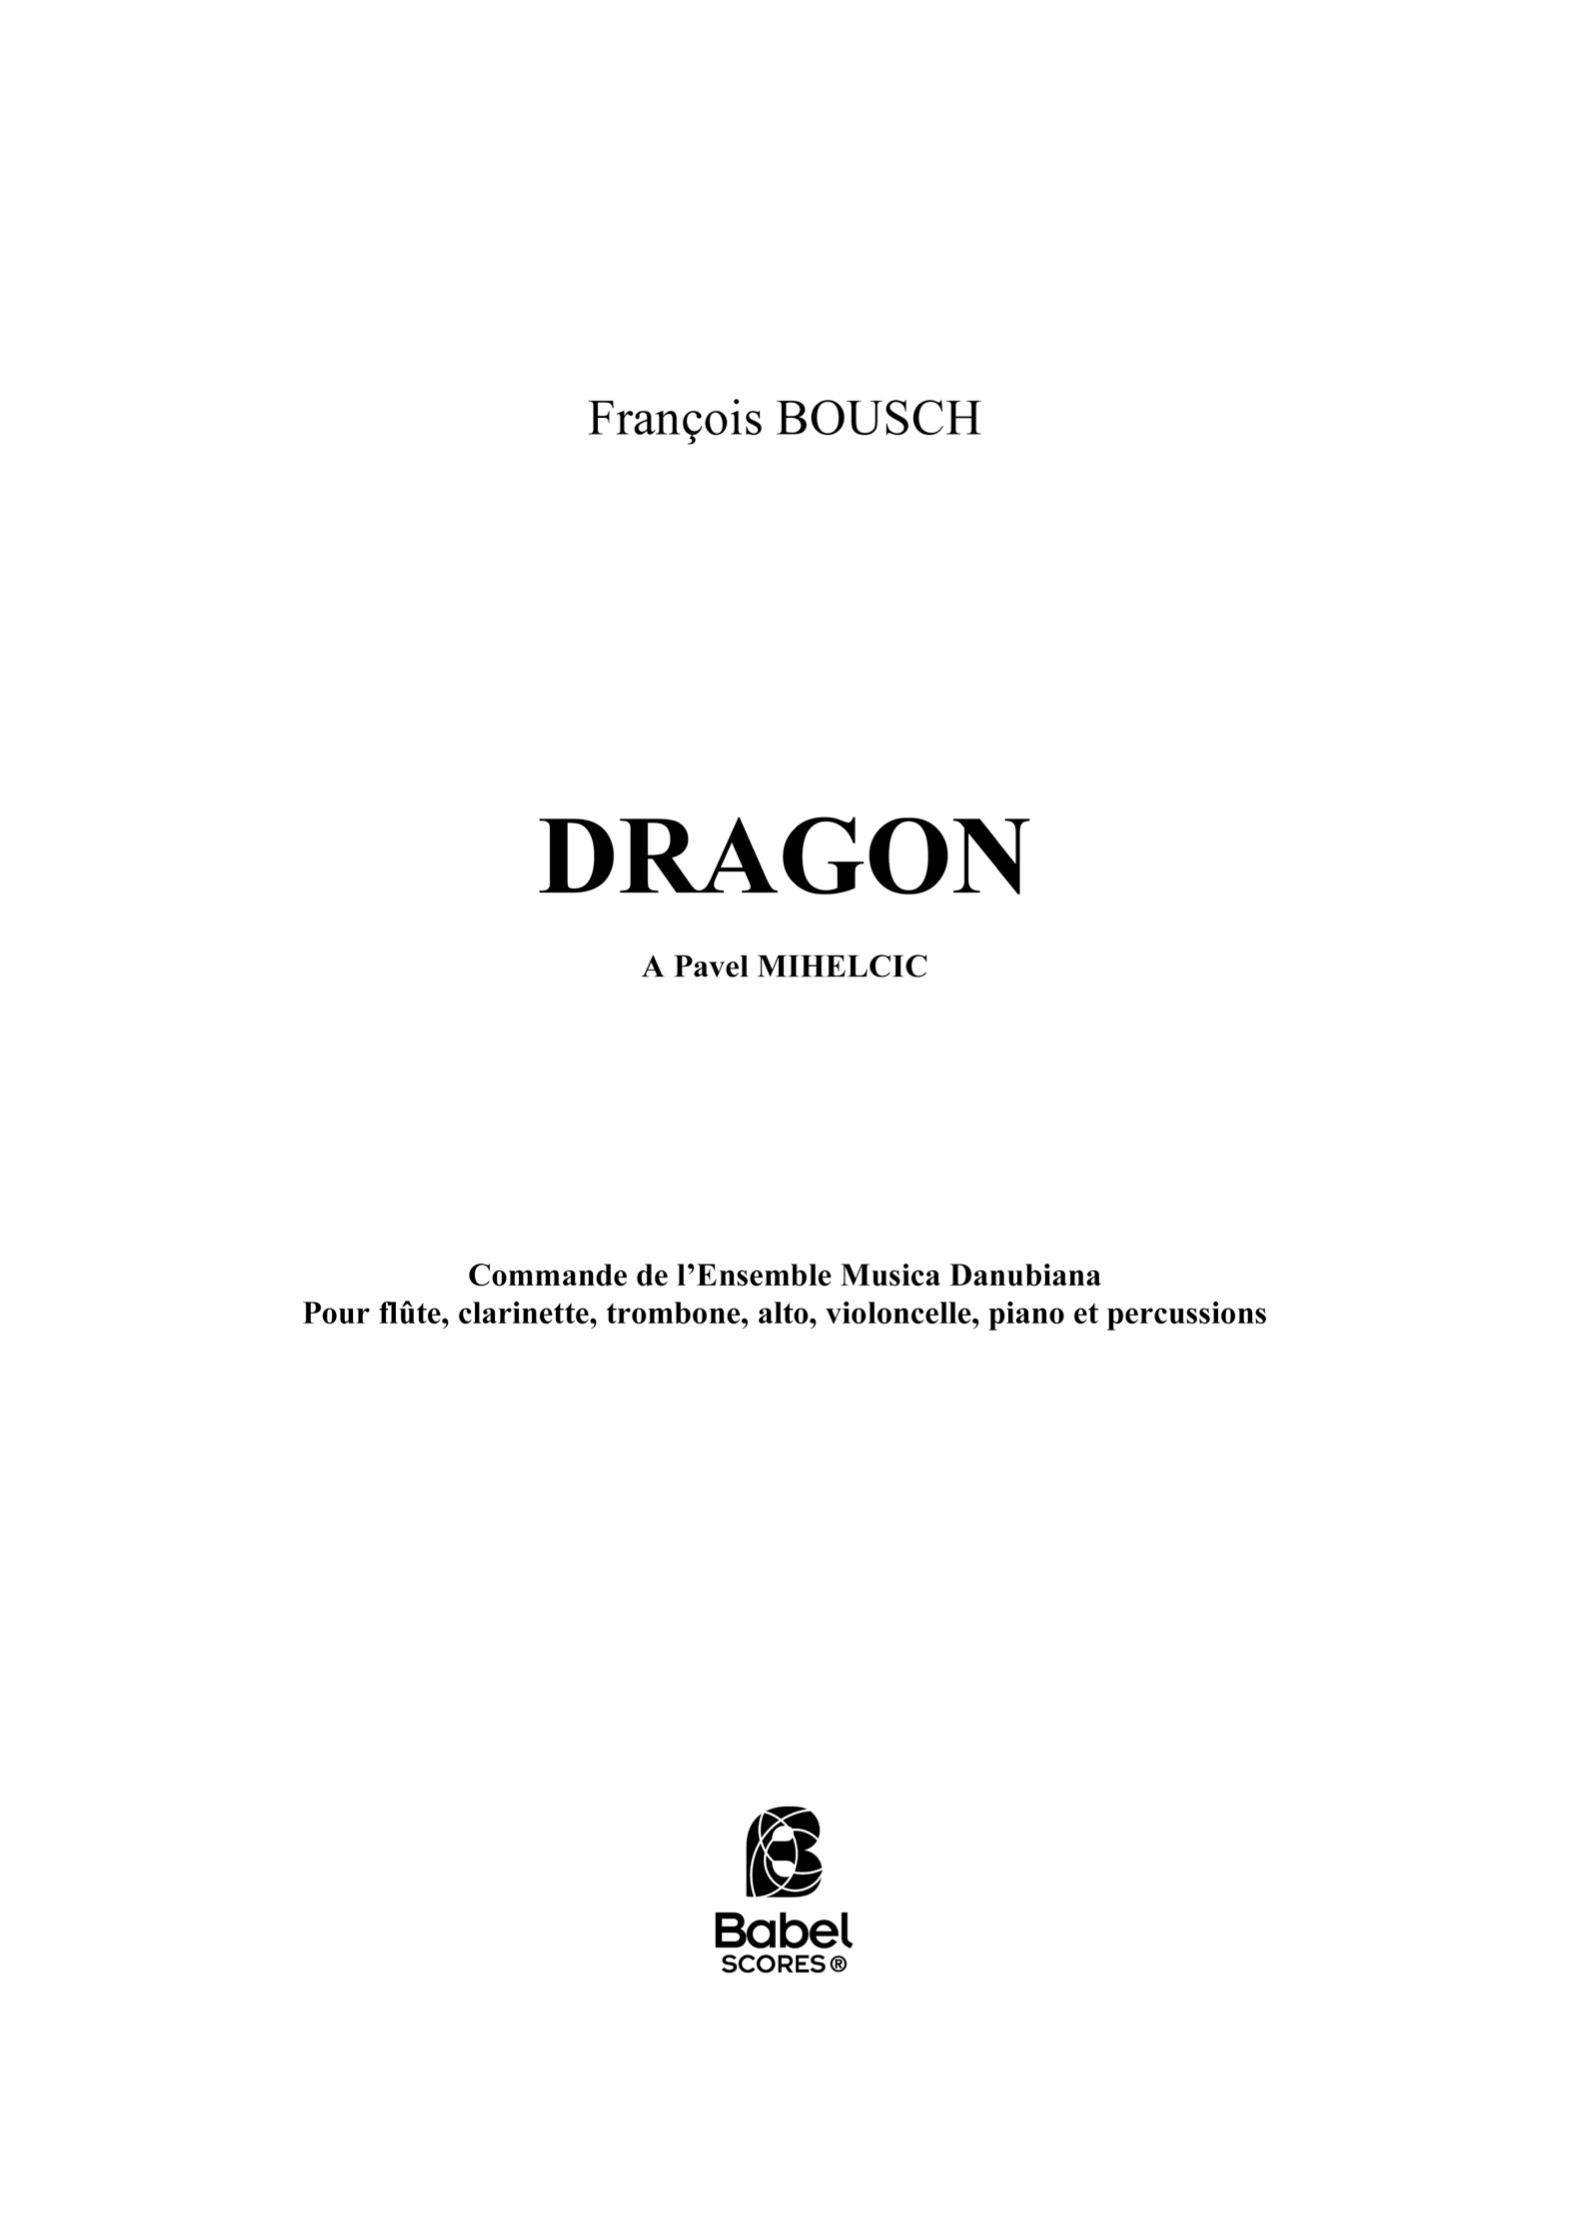 Dragon F BOUSCH